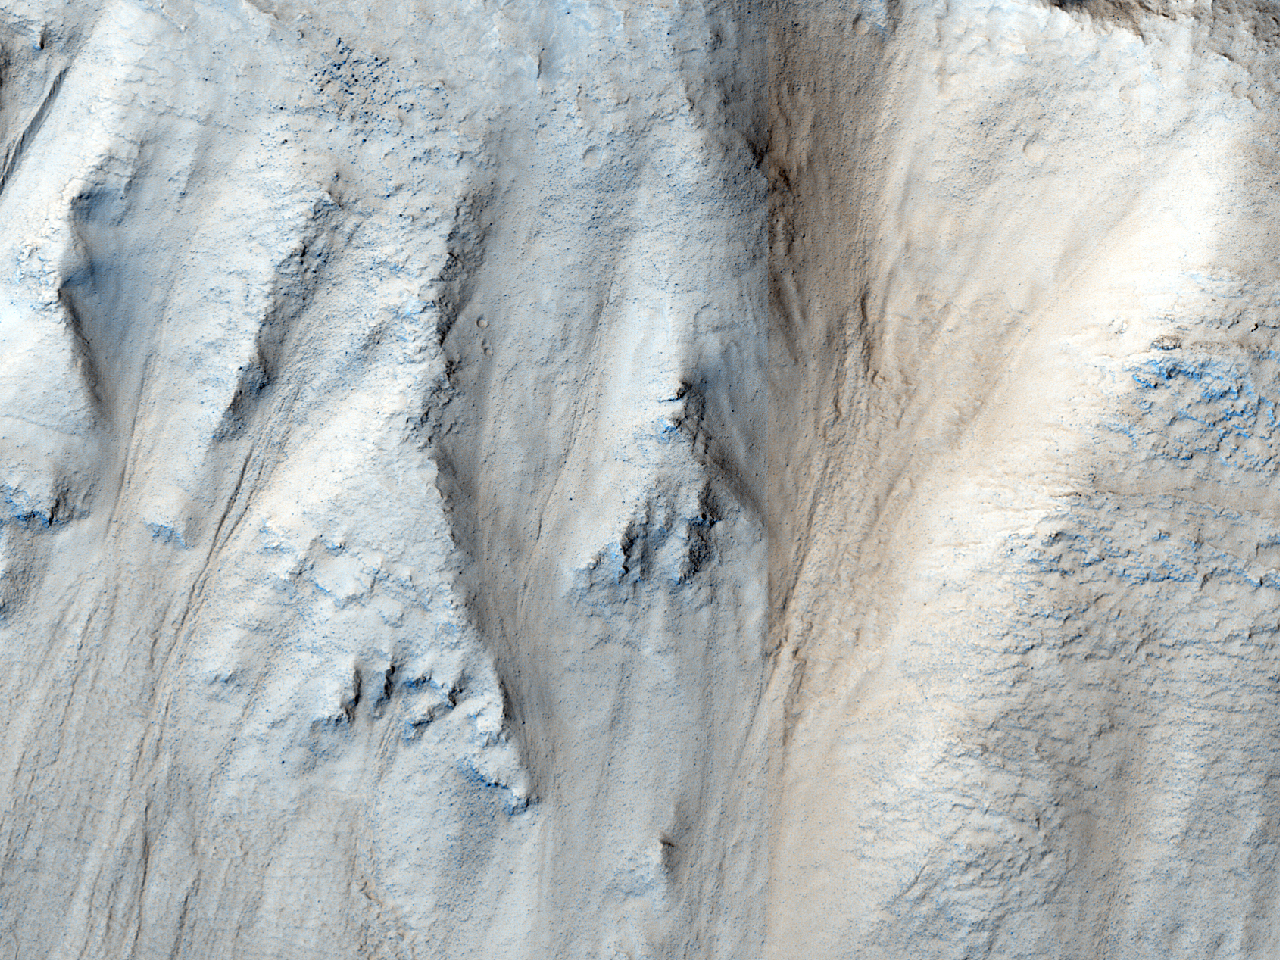 Possibili calanchi in un cratere nei Phlegra Montes